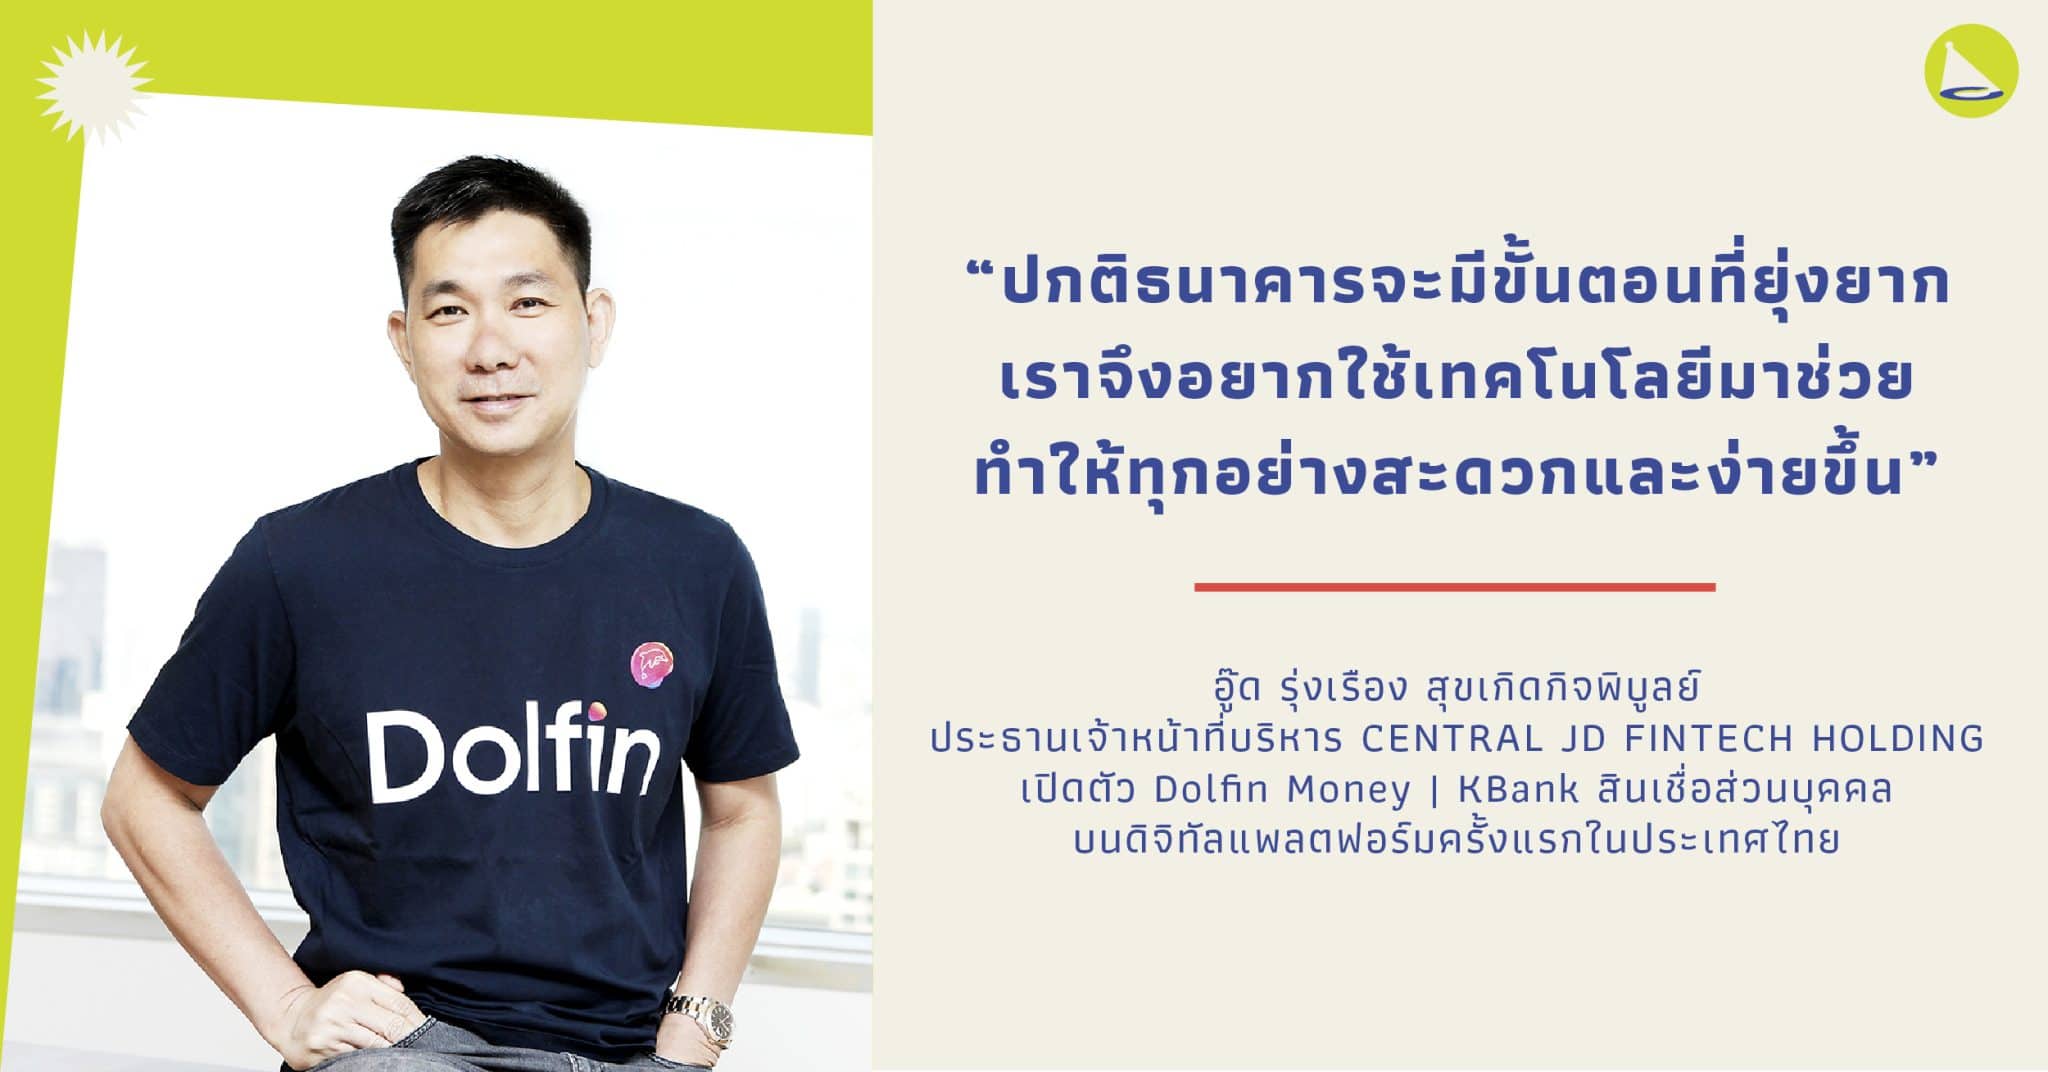 อู๊ด เรืองโรจน์: ชายผู้มีเป้าหมายในการยกระดับบริการทางการเงินของคนไทยด้วย Dolfin